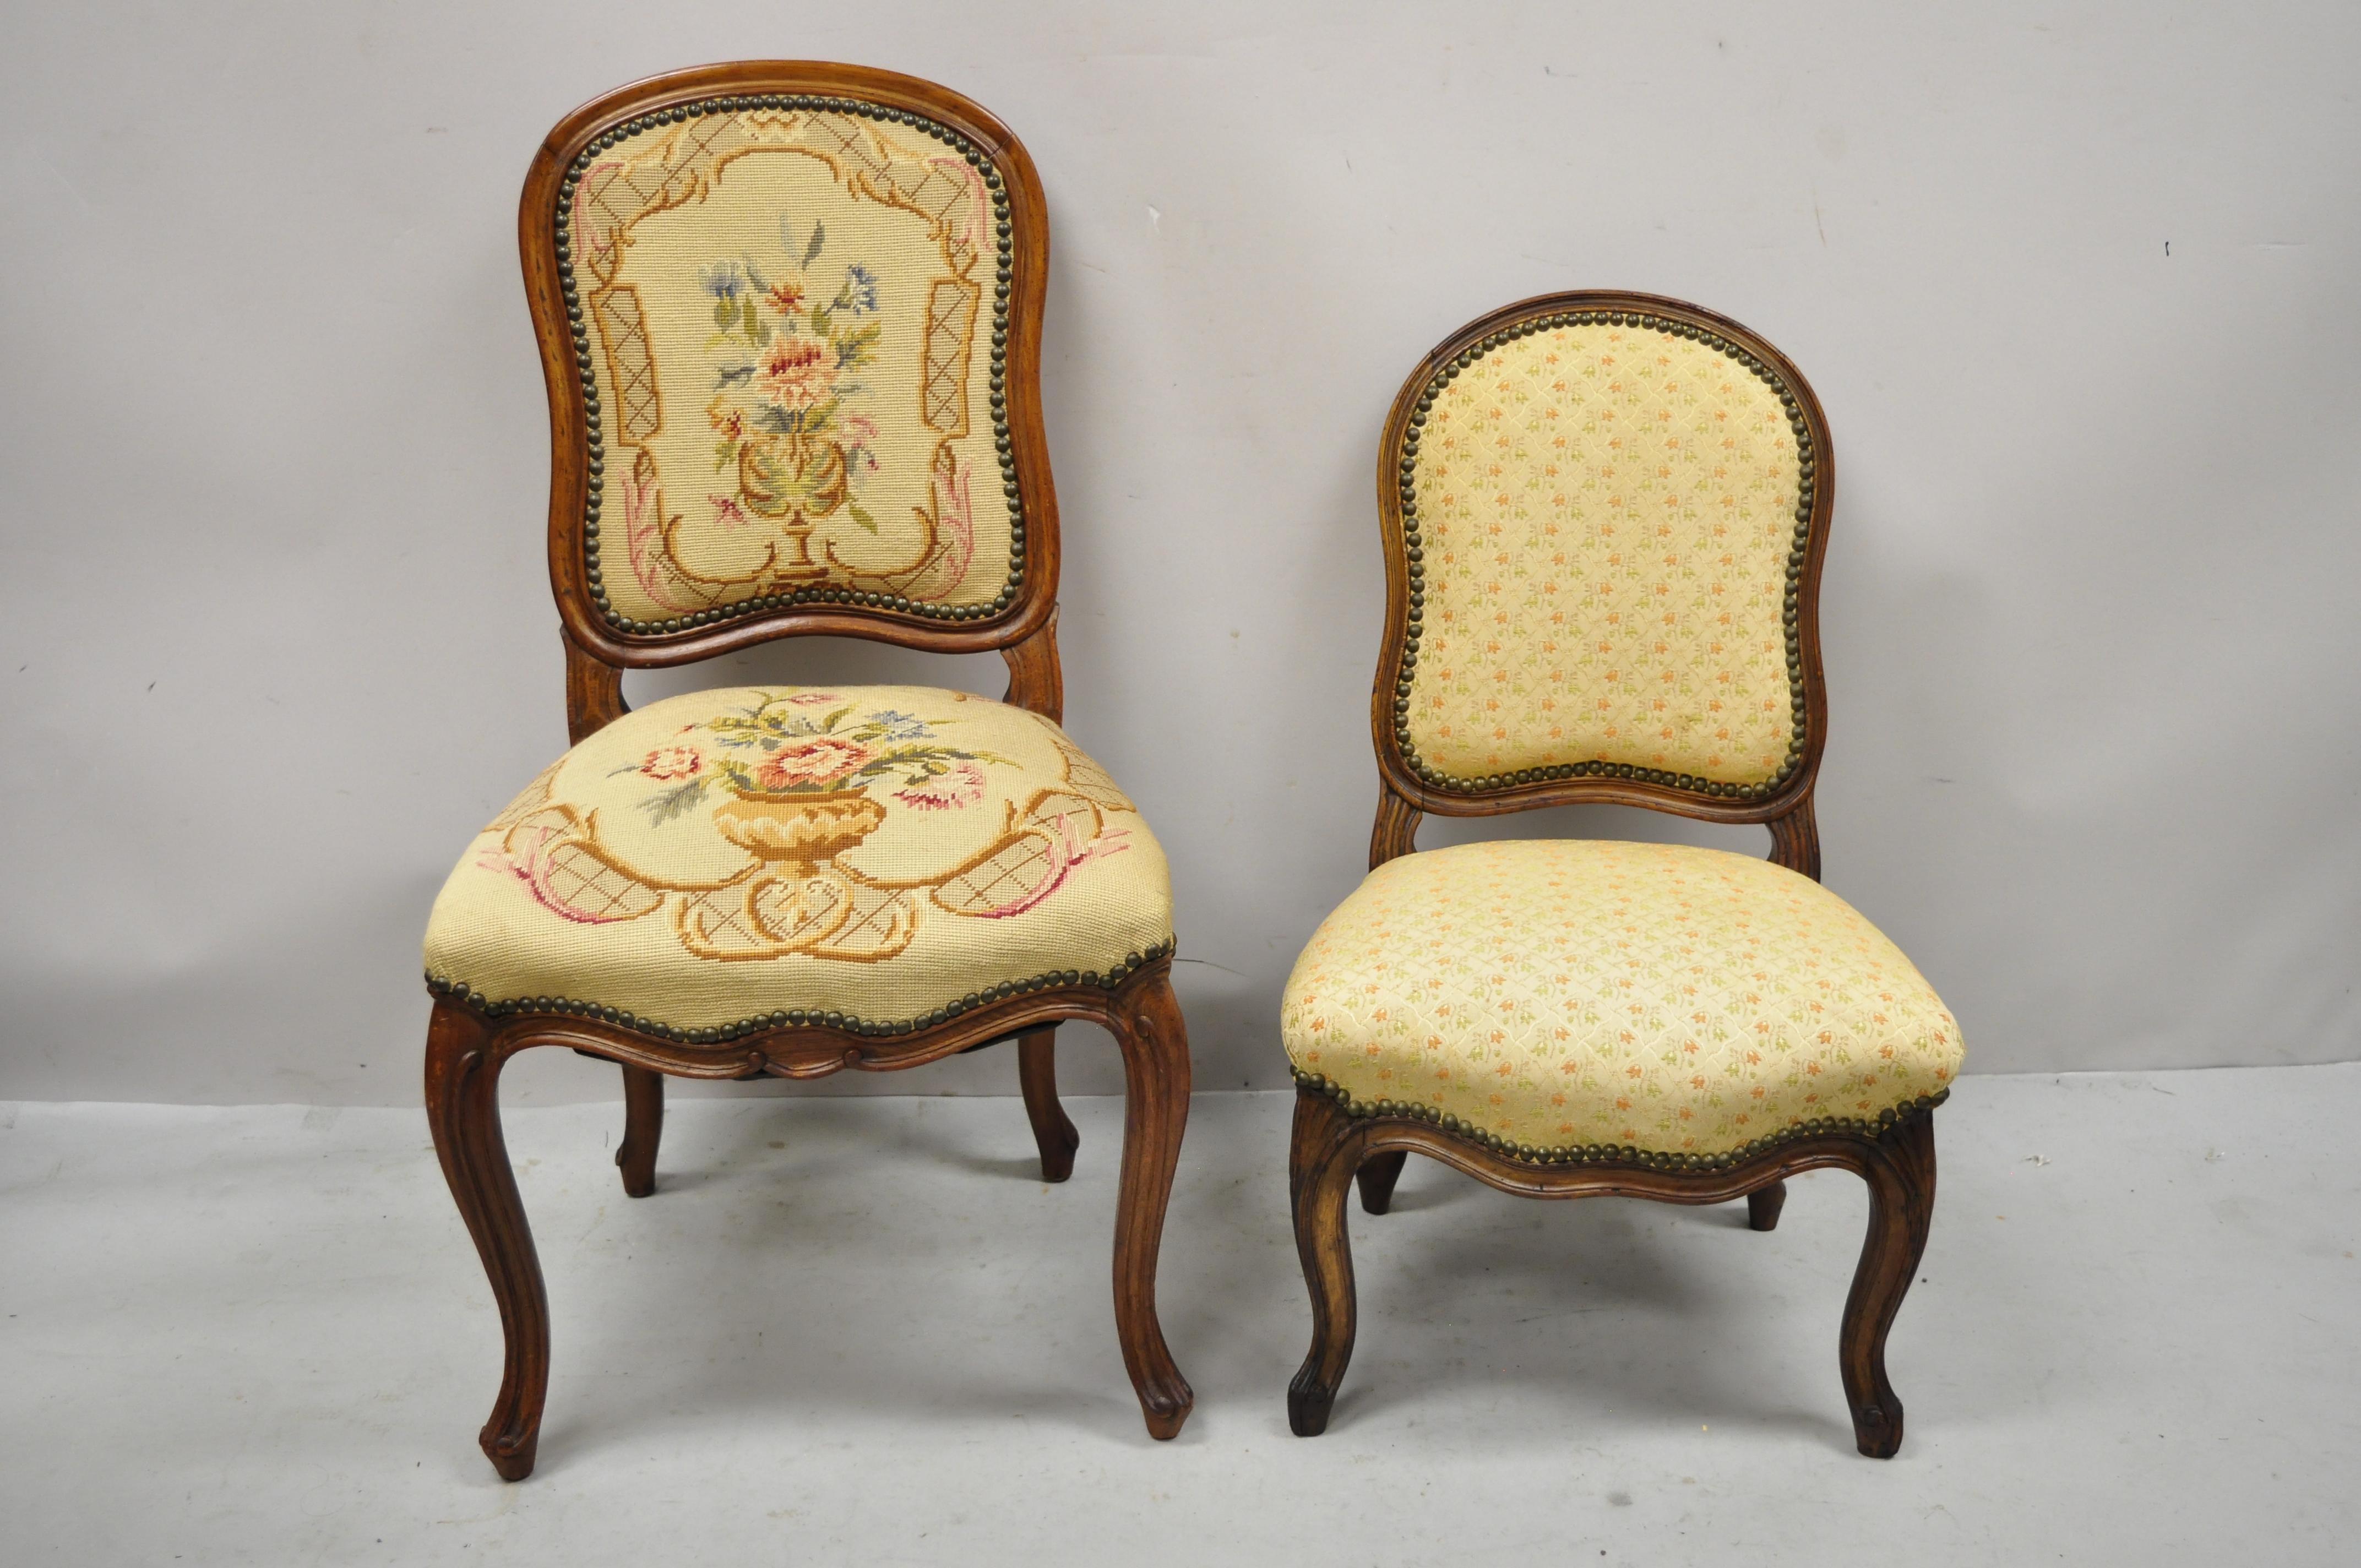 Petite chaise de boudoir ancienne de style Louis XV en noyer sculpté. Cet article présente une petite chaise de taille boudoir, un cadre en bois massif, un beau grain de bois, des détails joliment sculptés, des pieds cabriole, un très bel article